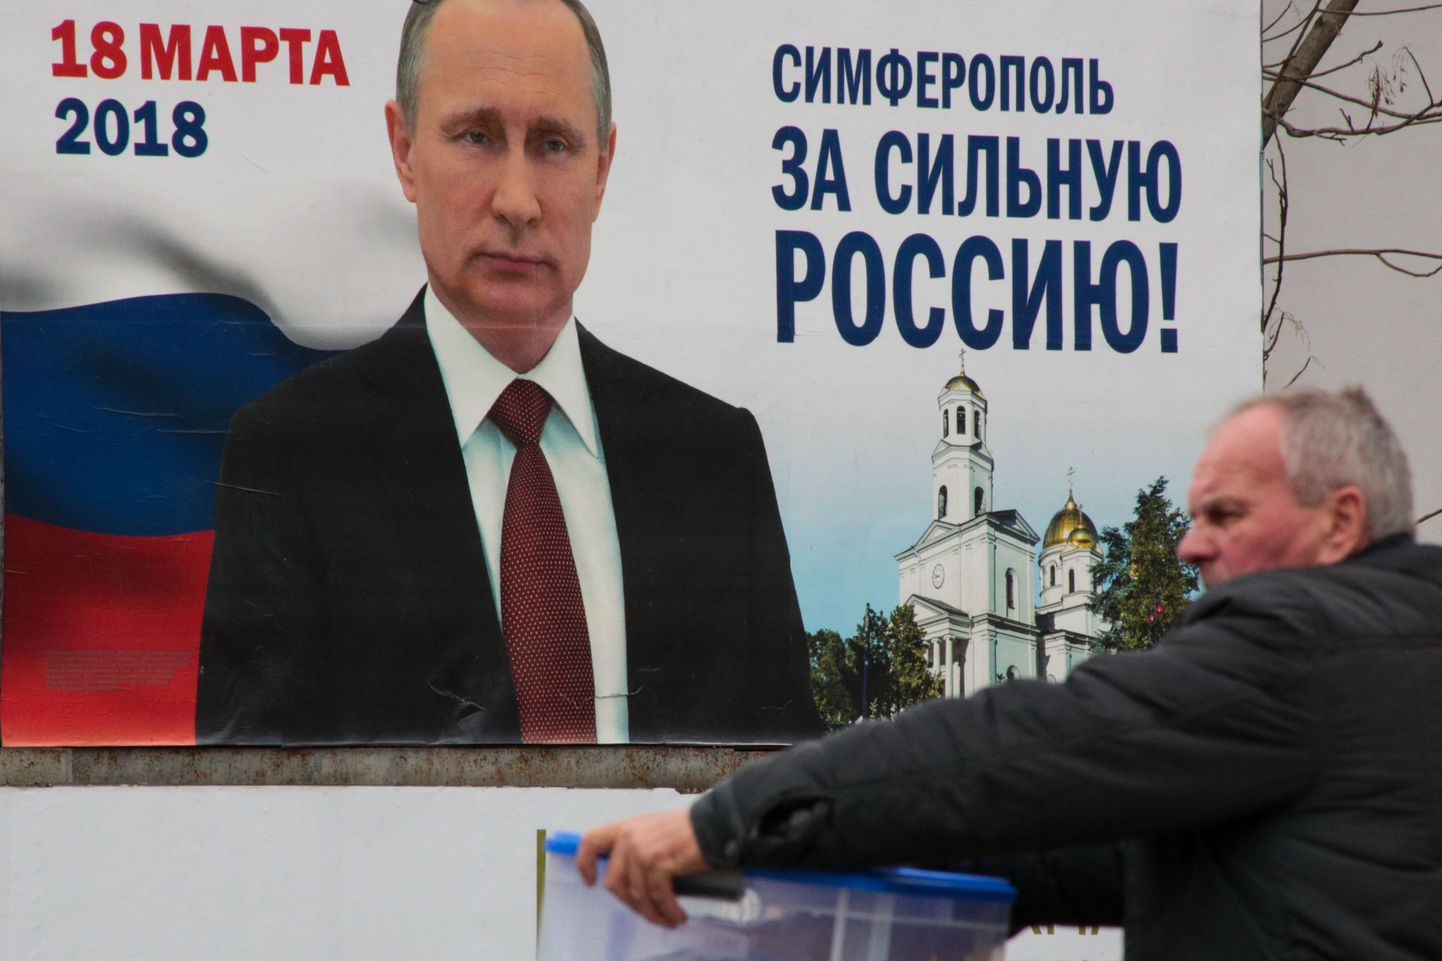 Vladimir Putini valimisplakat Simferopolis.